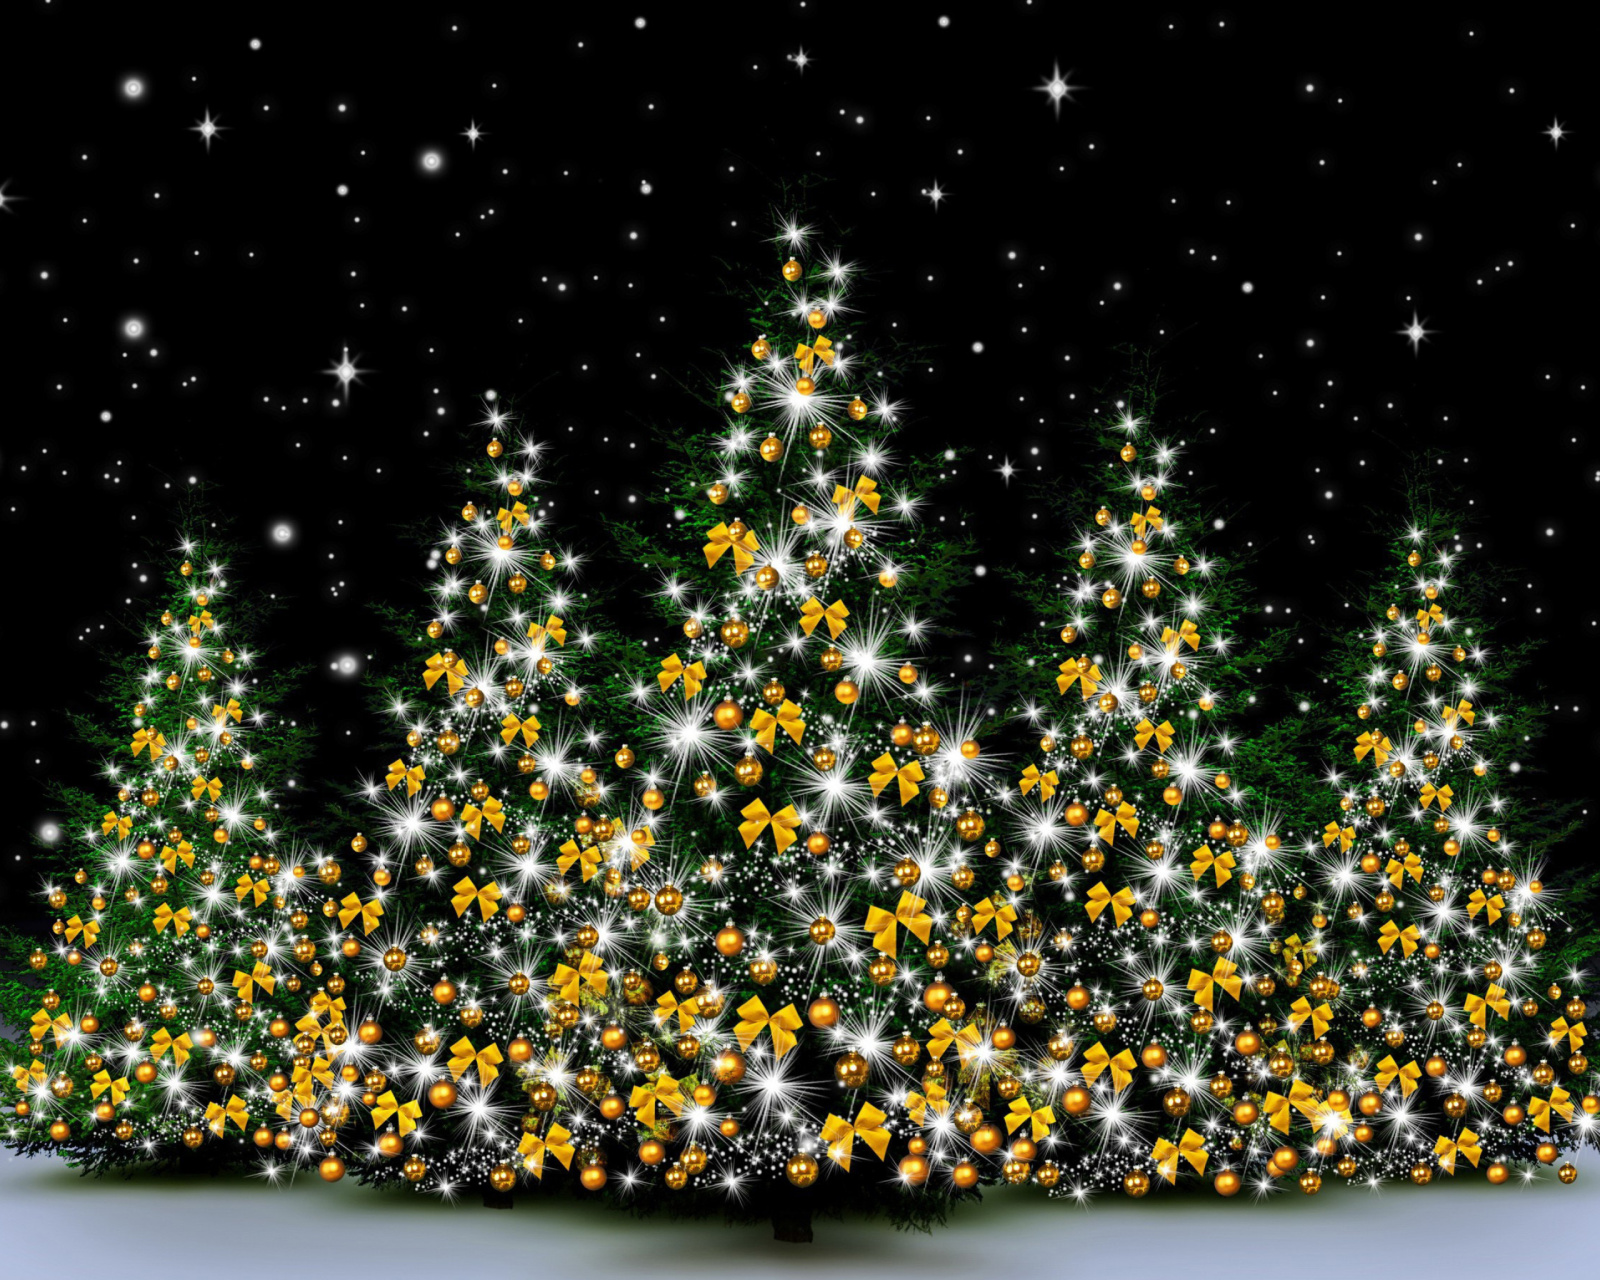 Christmas Trees in Light wallpaper 1600x1280